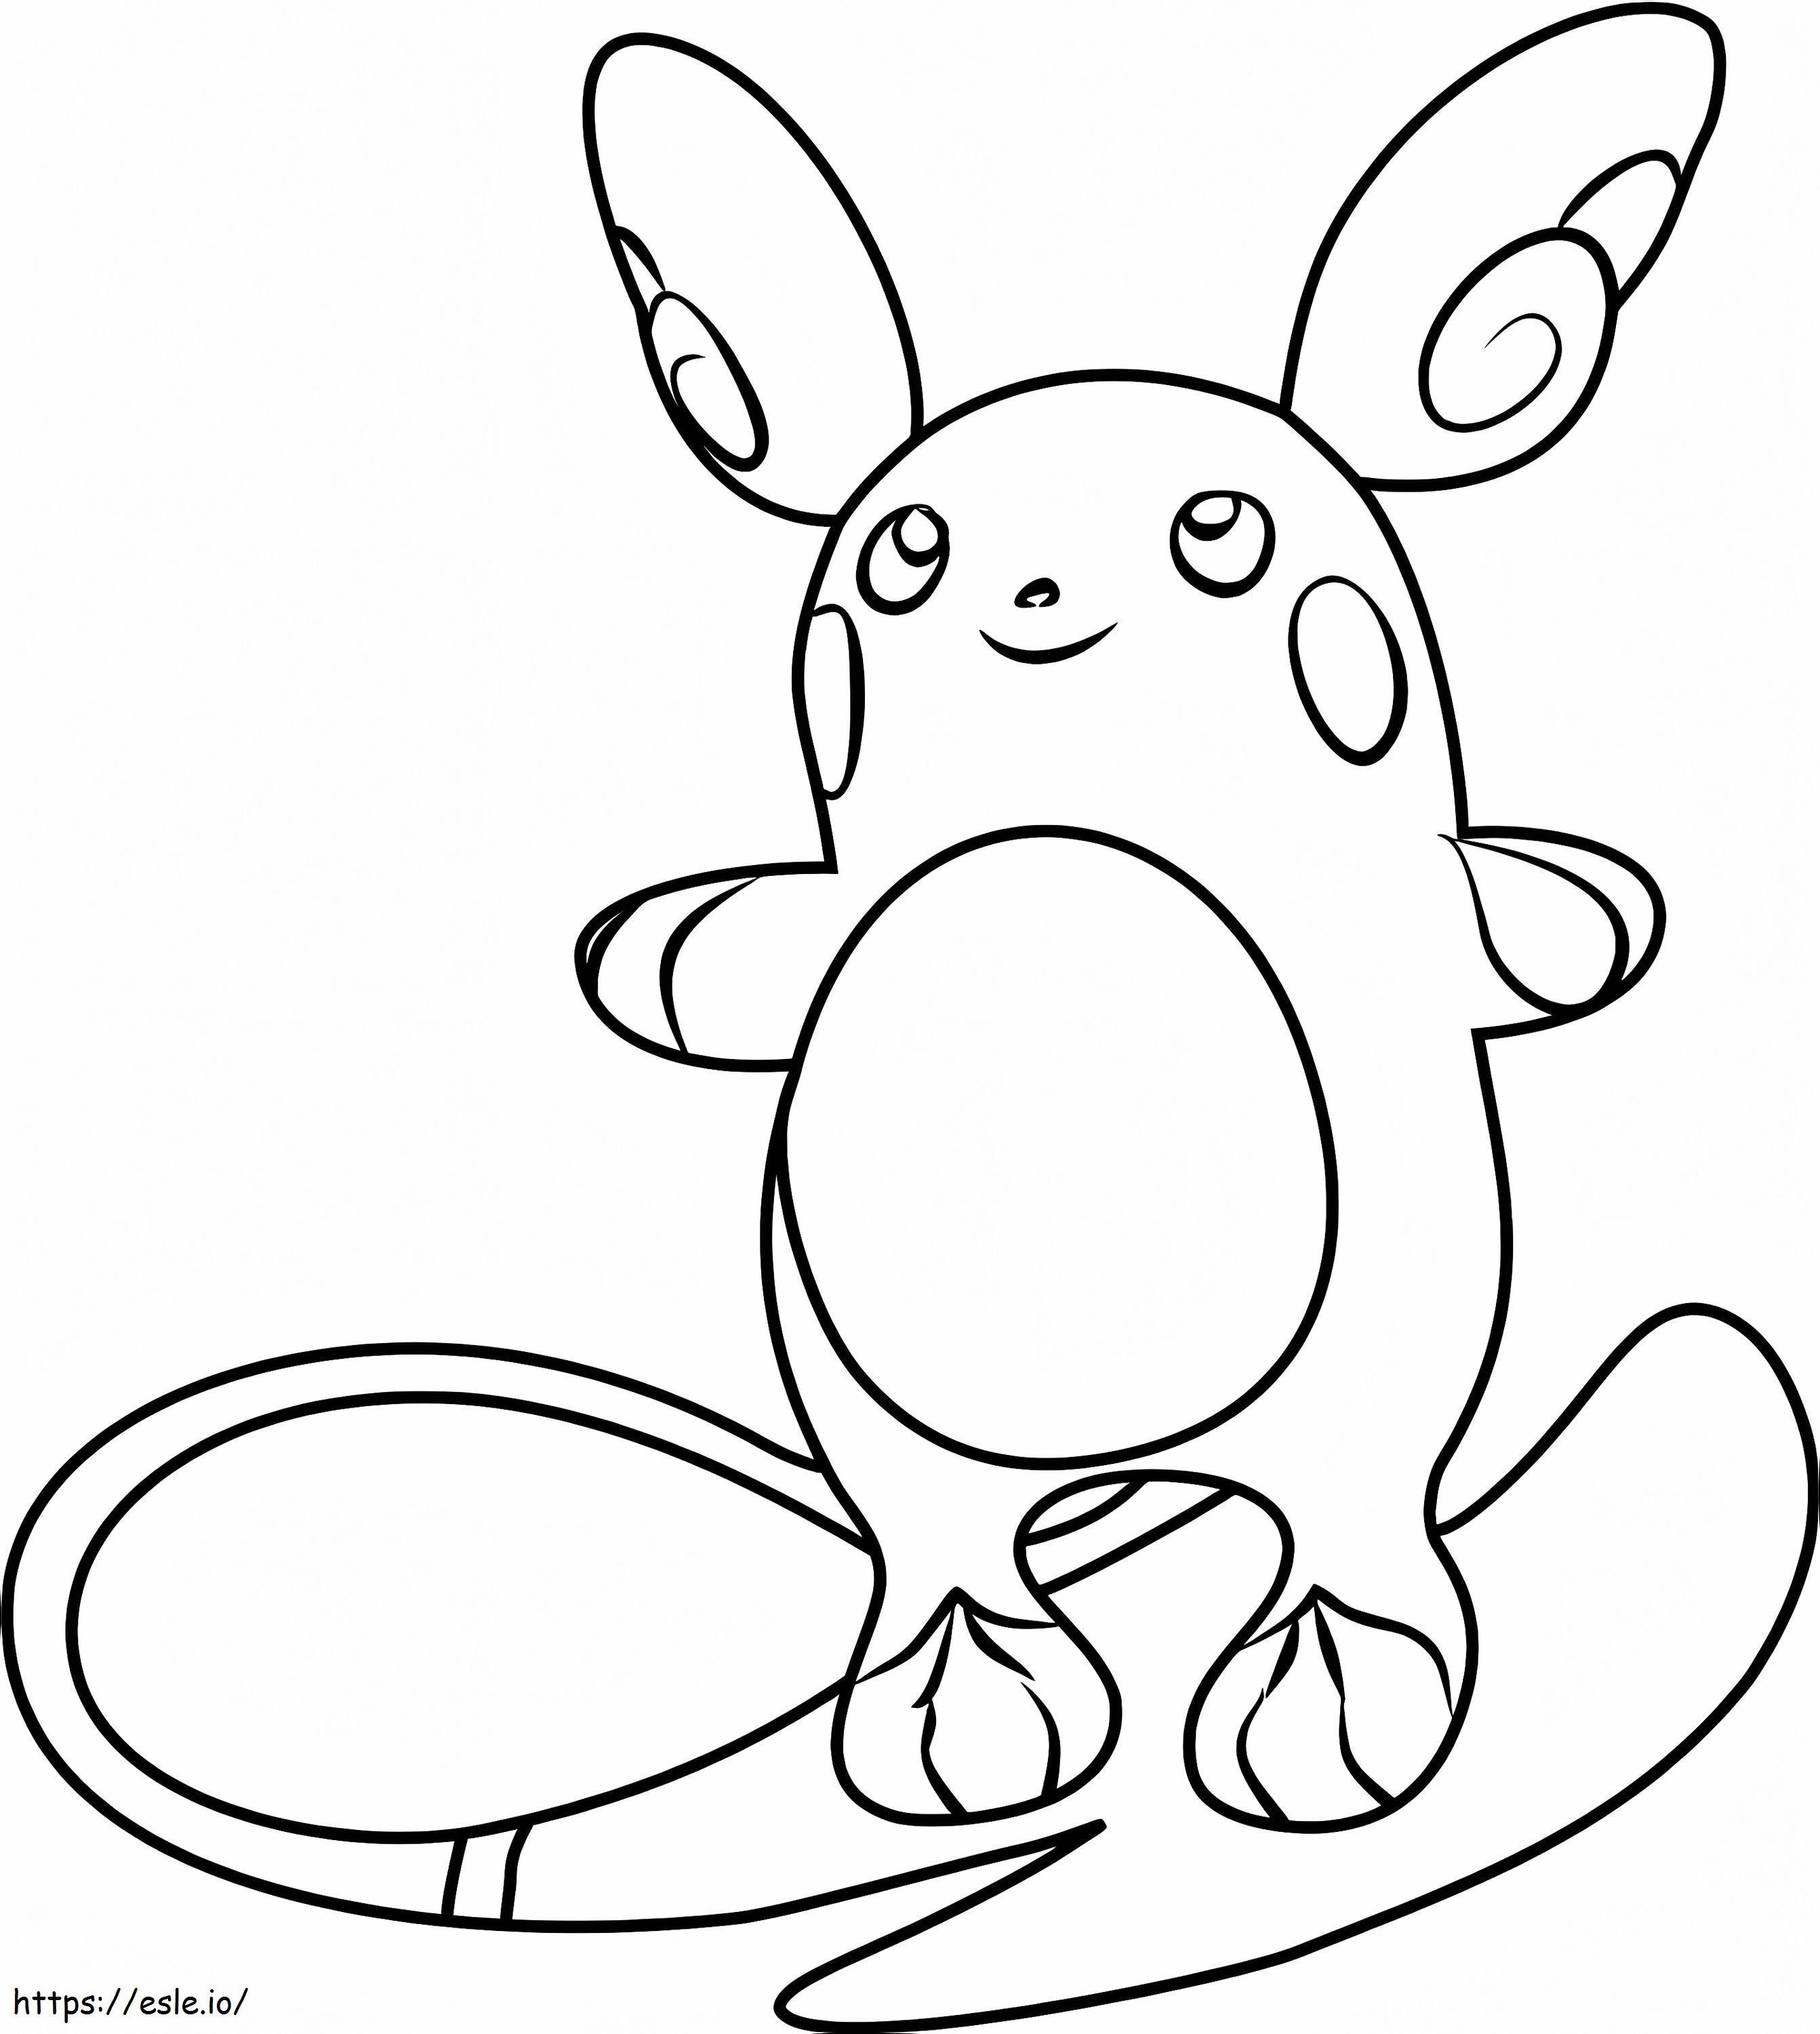 Pokémon Alolański Raichu kolorowanka